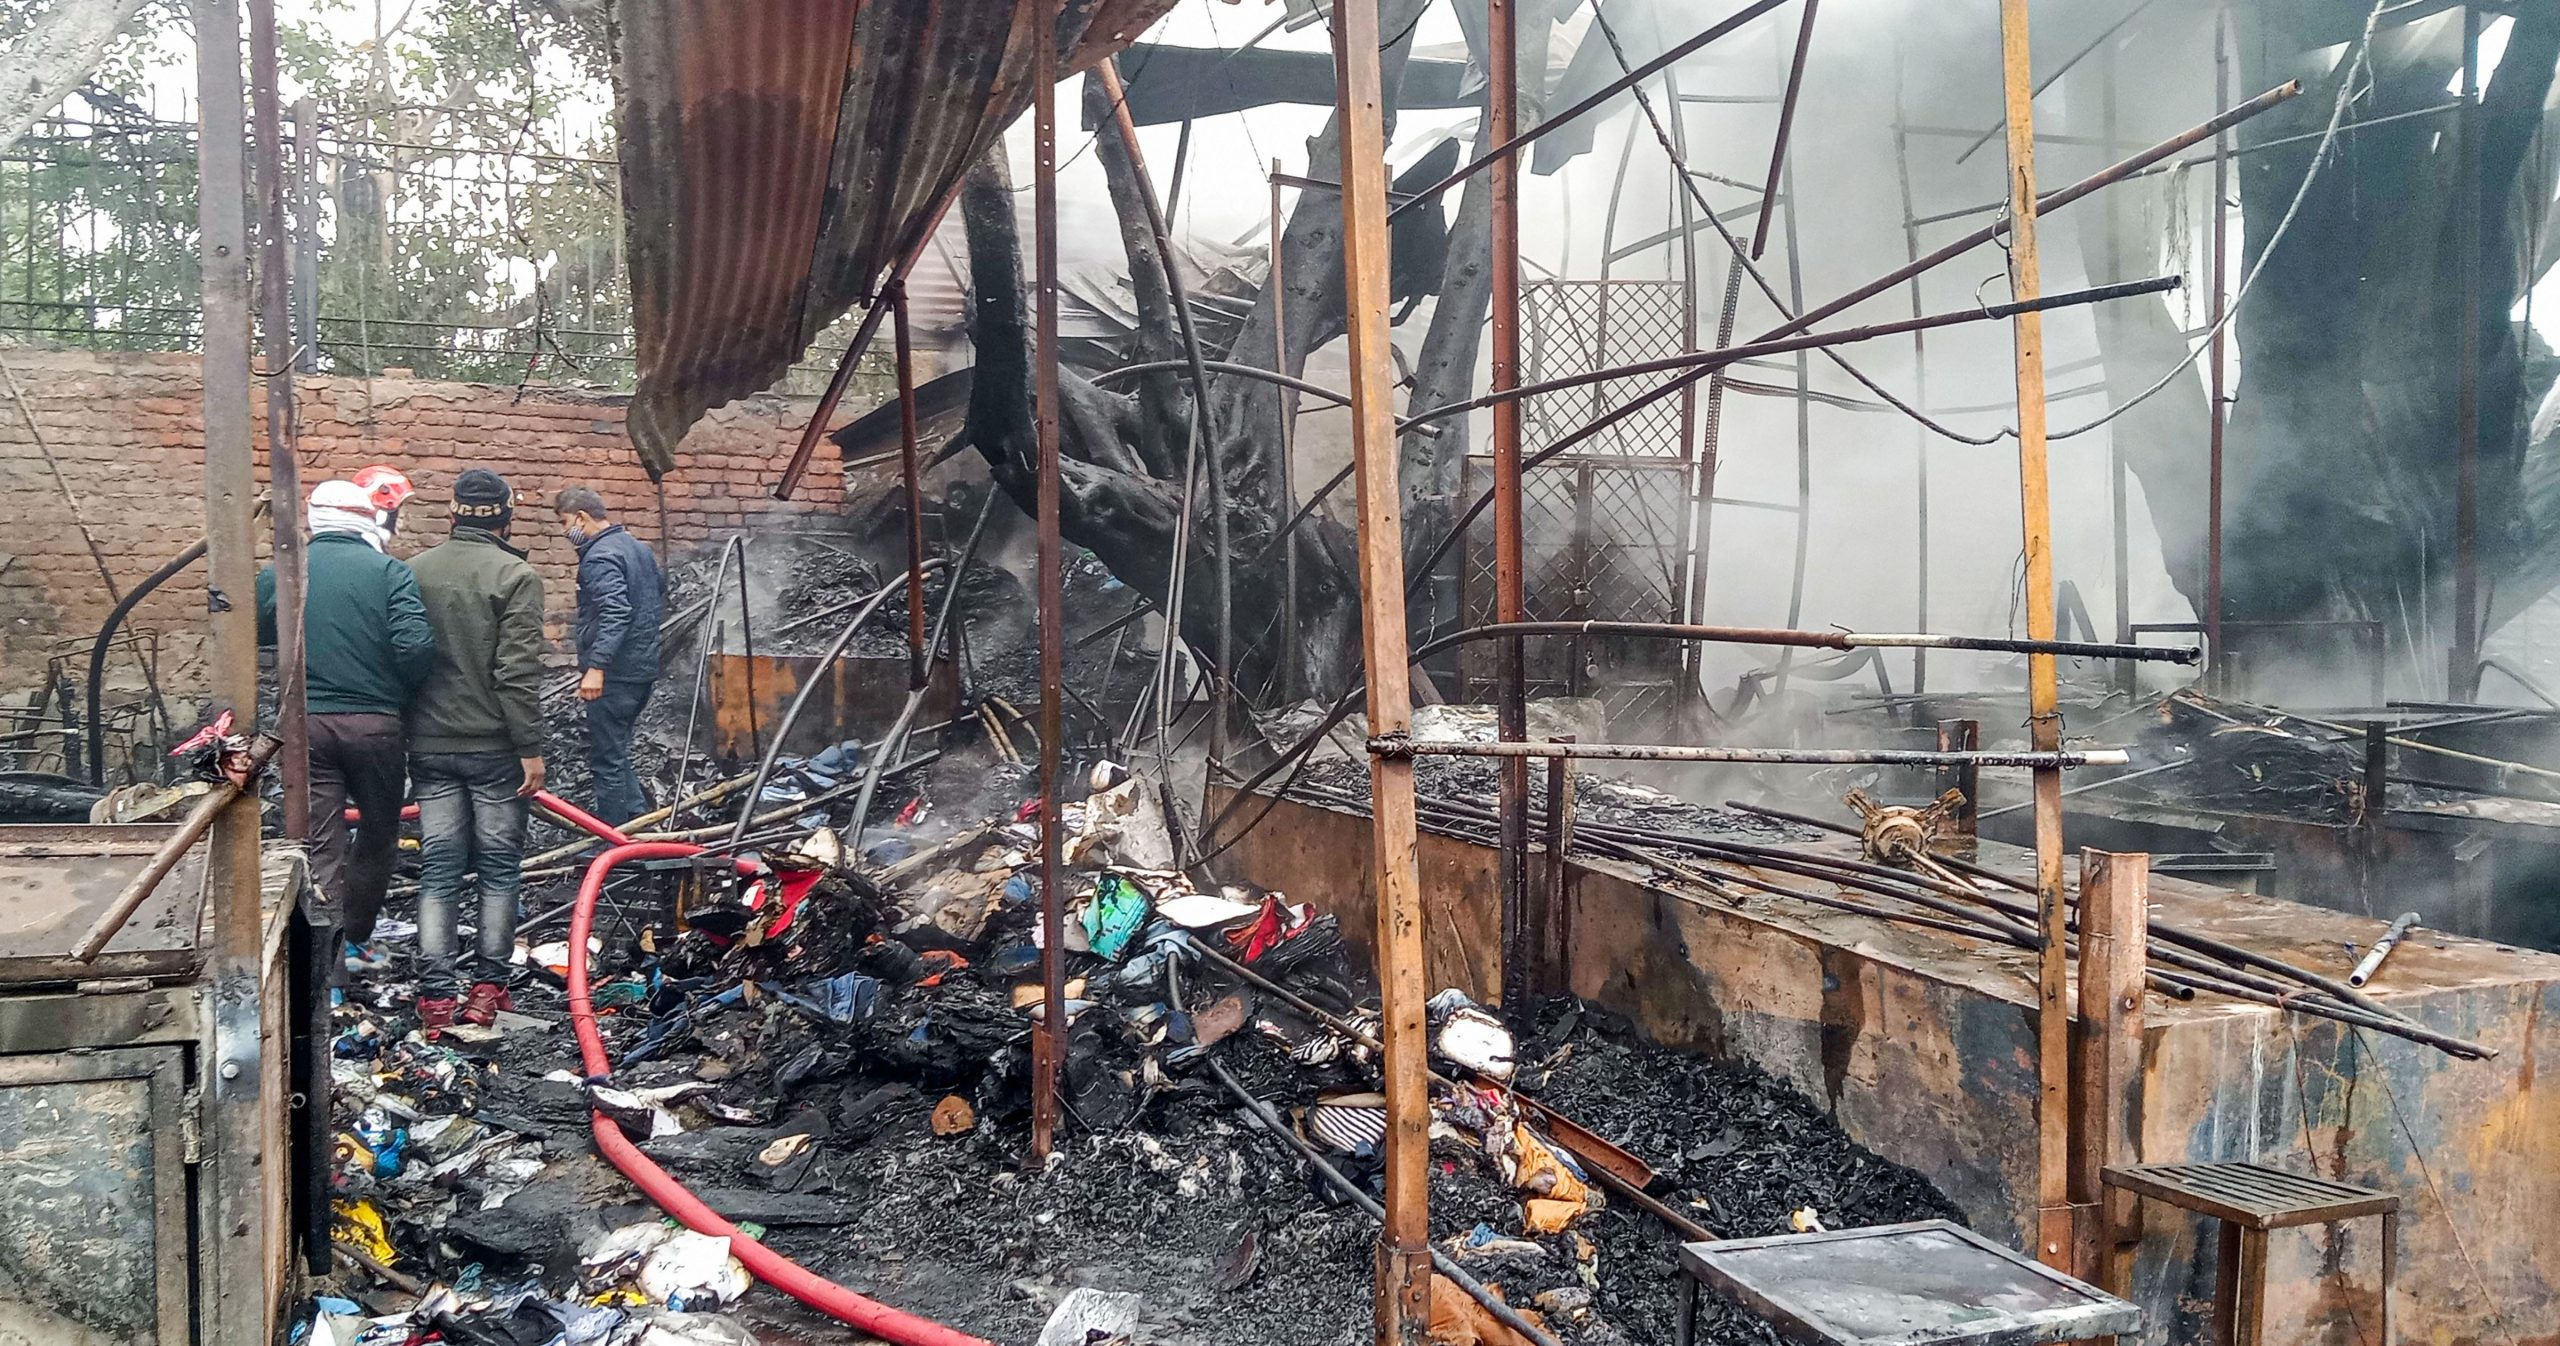 Fire breaks out at Delhi’s New Lajpat Rai market, nearly 80 shops gutted in blaze